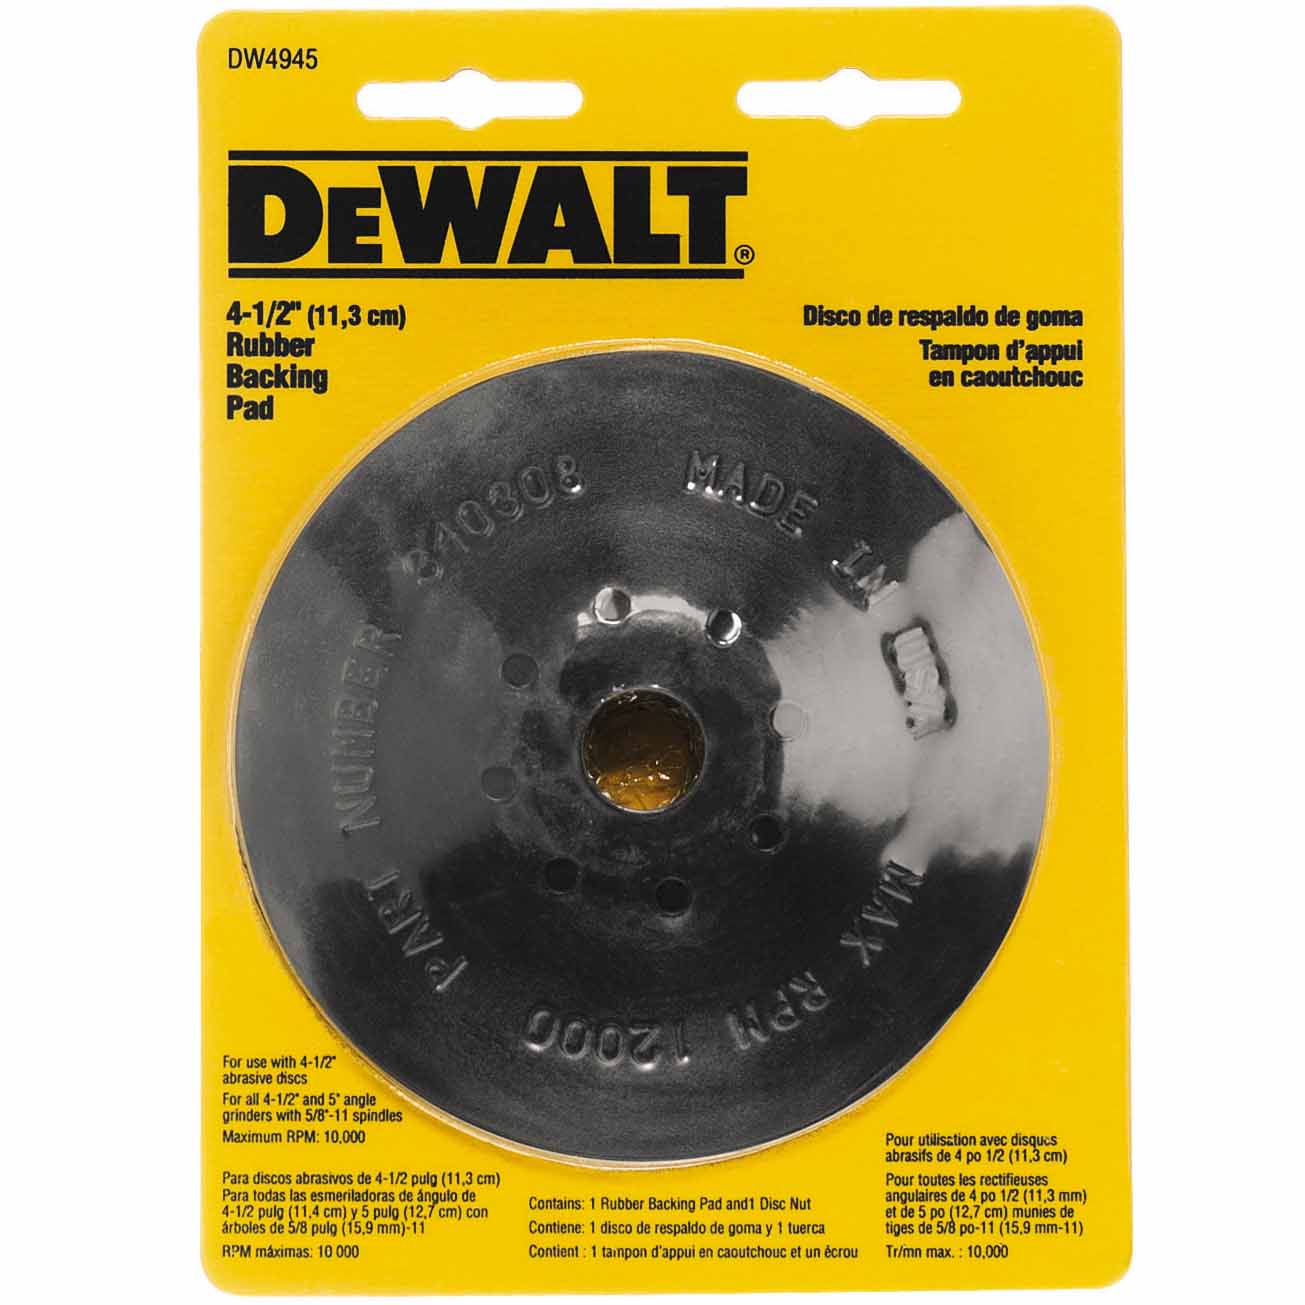 DeWalt DW4945 4-1/2" Steel Reinforced Rubber Backing Pad w/ 5/8"-11 Locking Nut